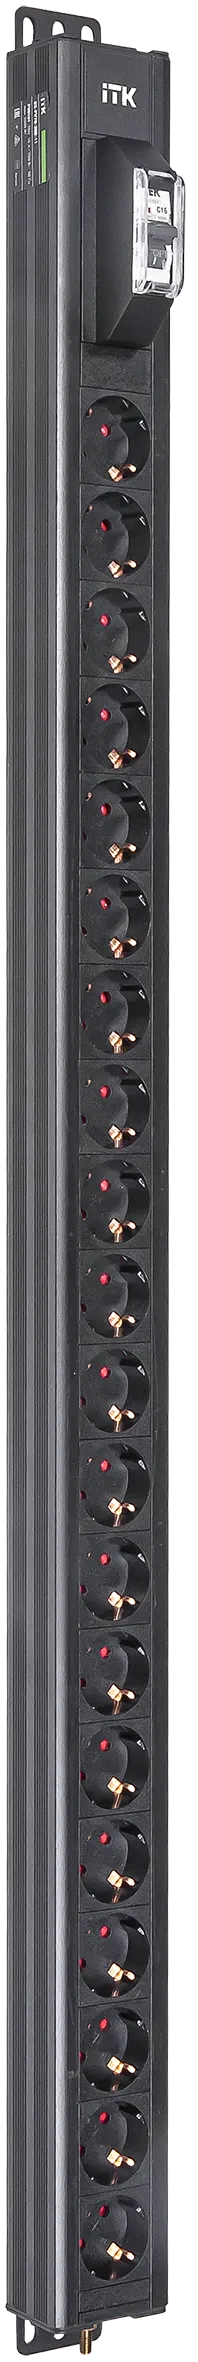 Вертикальный однотипный блок распределения питания PDU ITK включает в себя 20 розеток Schuko. PDU ITK изготавливается из высококачественных термостойких материалов и пластмасс, оснащается разъемом C20 для подключения кабеля необходимой длины. Шнур питания не входит в комплект. PDU ITK прекрасно справляется с задачей по электроснабжению сетевого оборудования в шкафах и стойках, а также с требованием защиты от токов короткого замыкания и перенапряжения. PDU ITK соответствует российским и международным стандартам качества и устанавливается с помощью кронштейнов, при этом положение кронштейнов можно менять, либо безынструментальным методом при помощи монтажных штифтов.